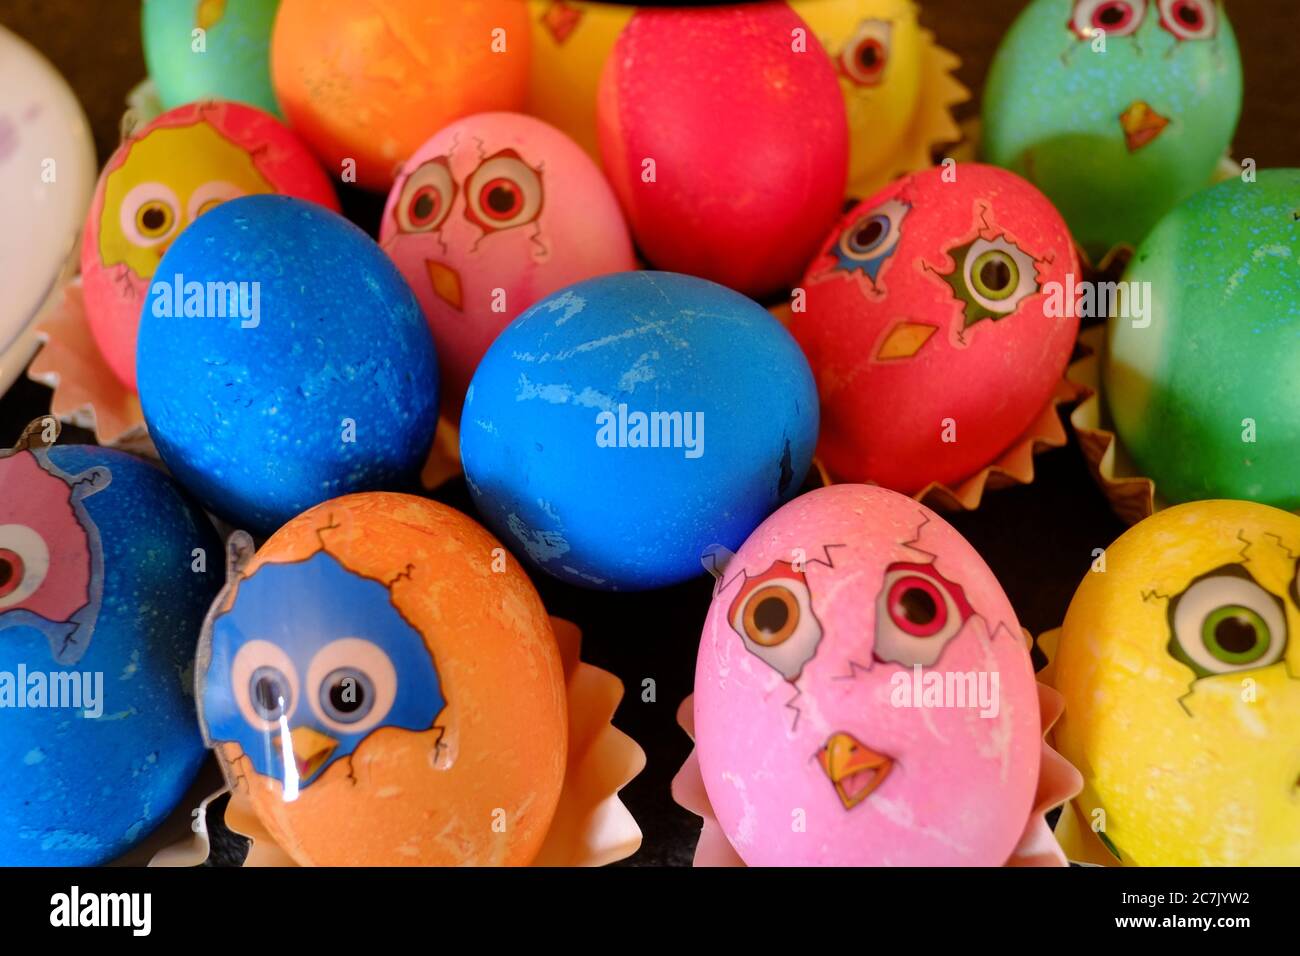 Uova di Pasqua colorate con adesivi che sembrano polli appena sfornati Foto Stock